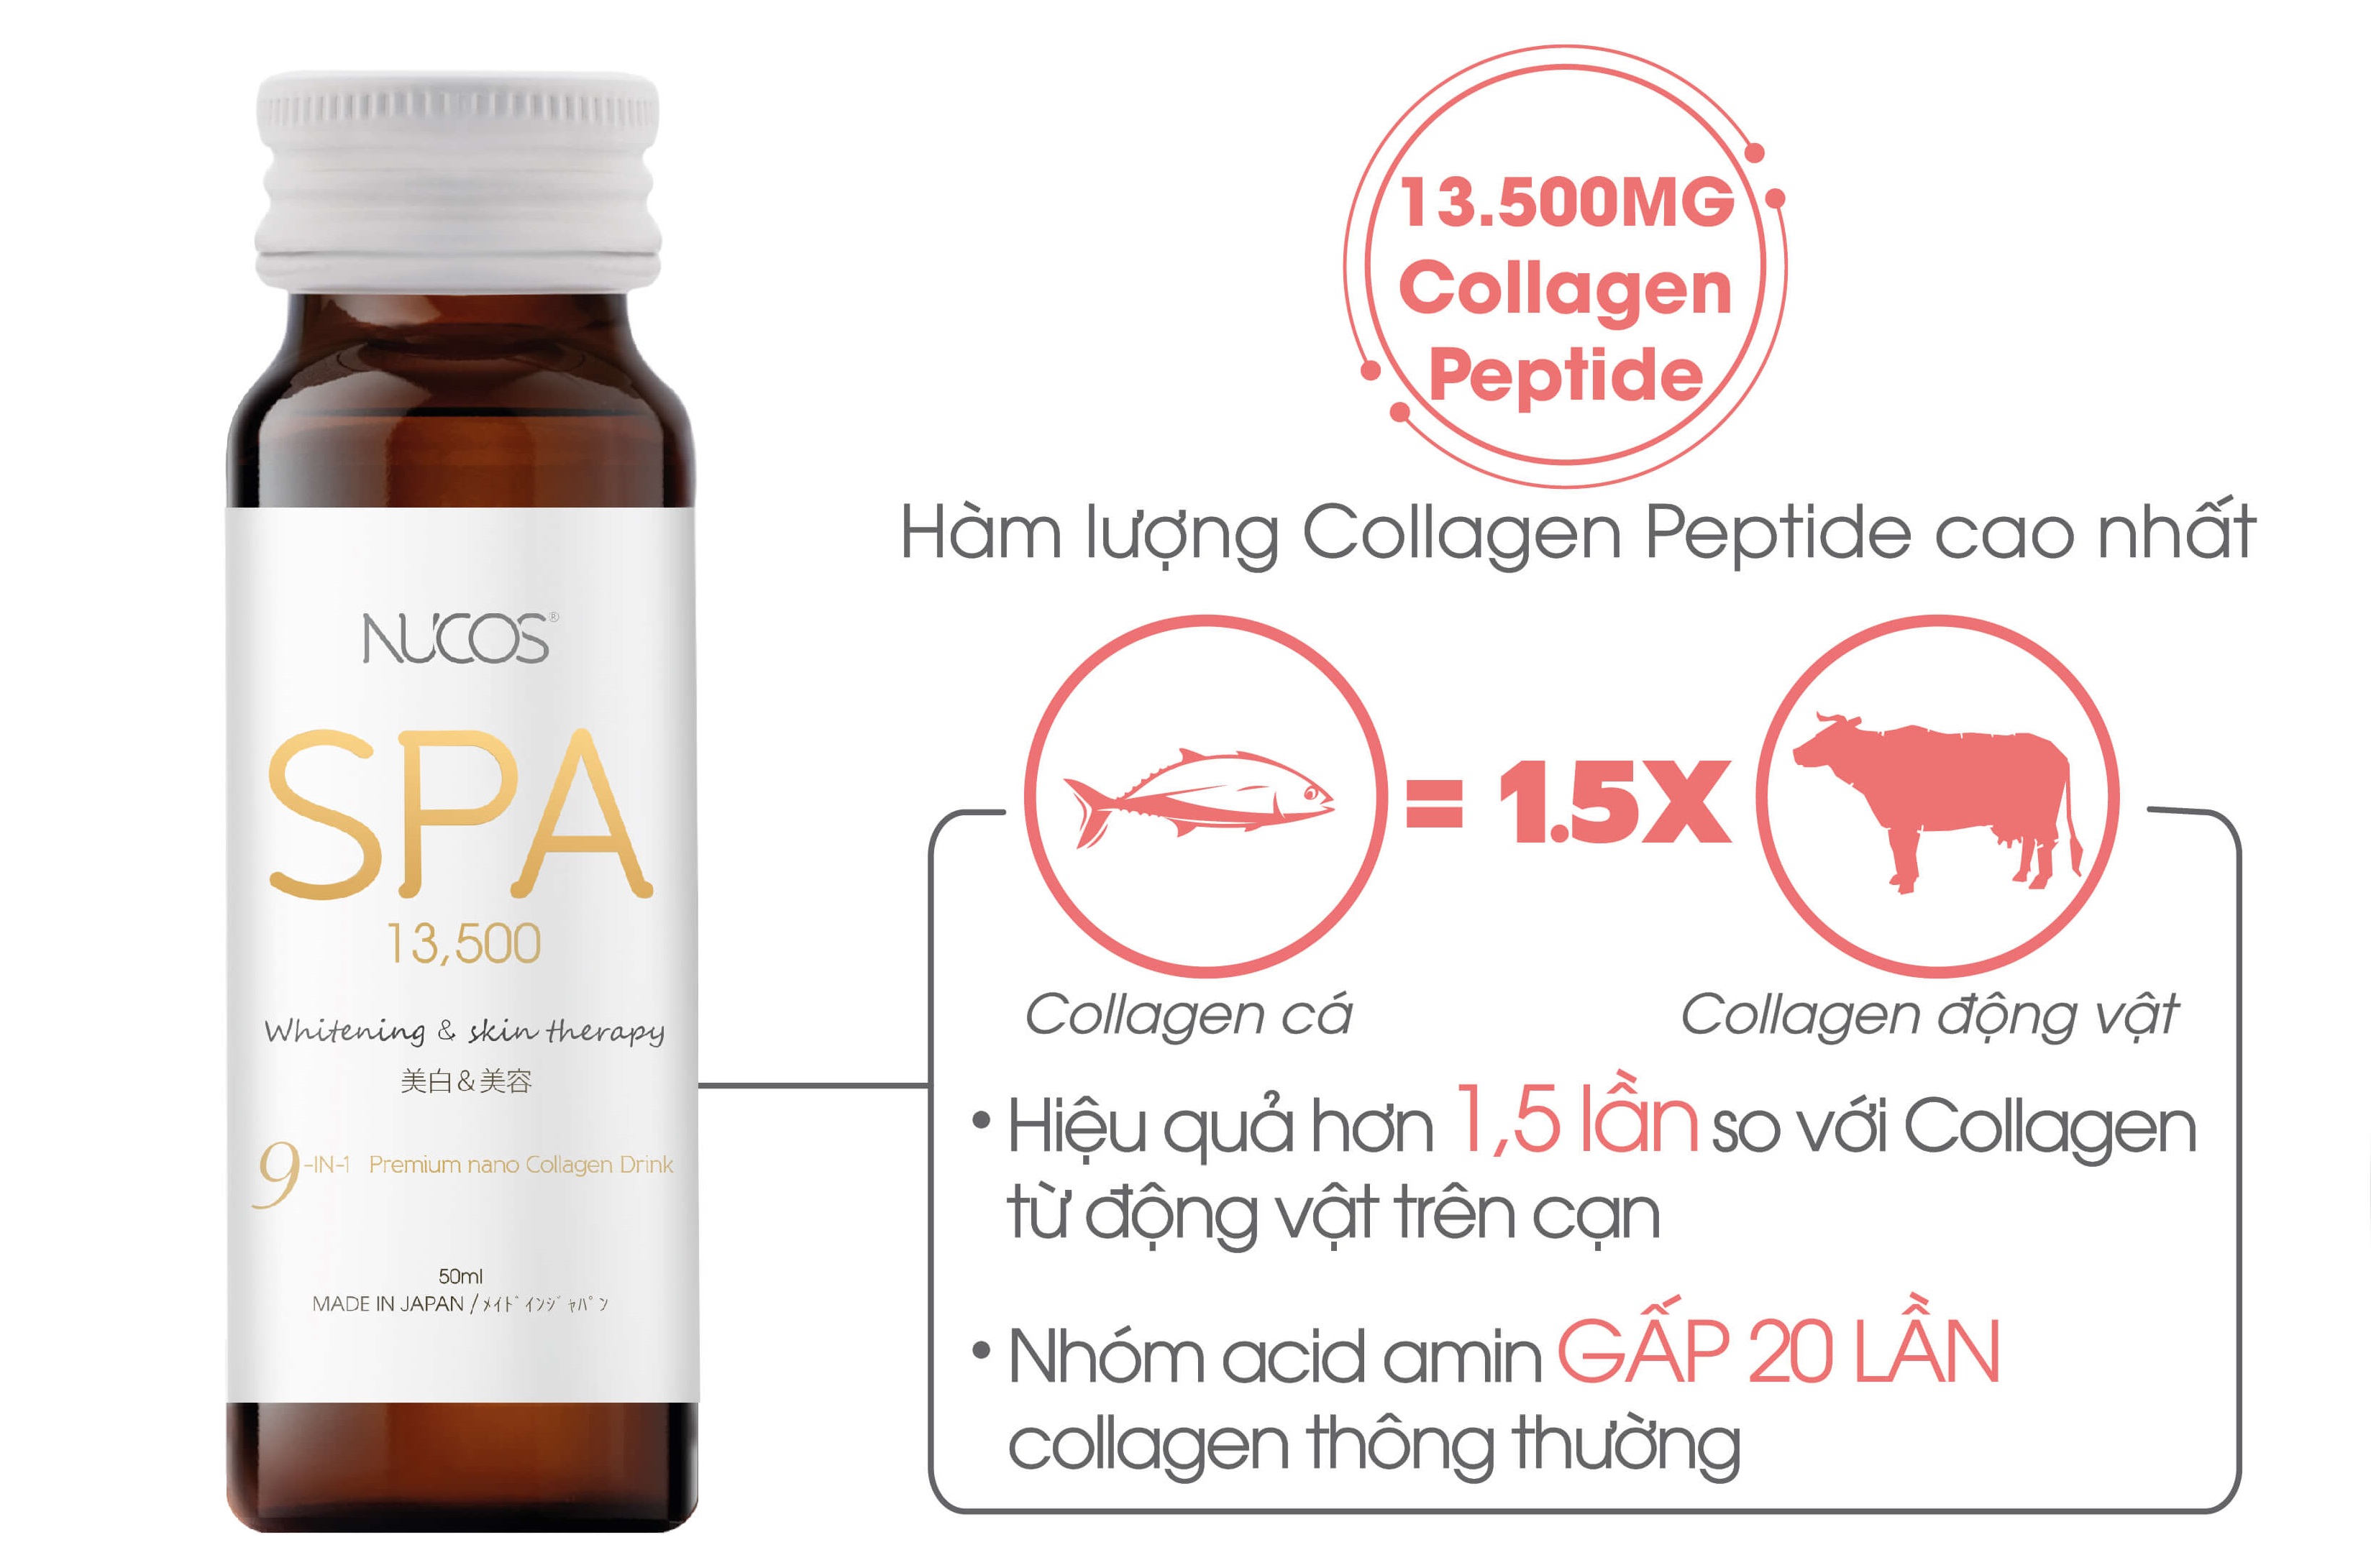 Hàm lượng collagen Nucos Spa 13,500 cao nhất